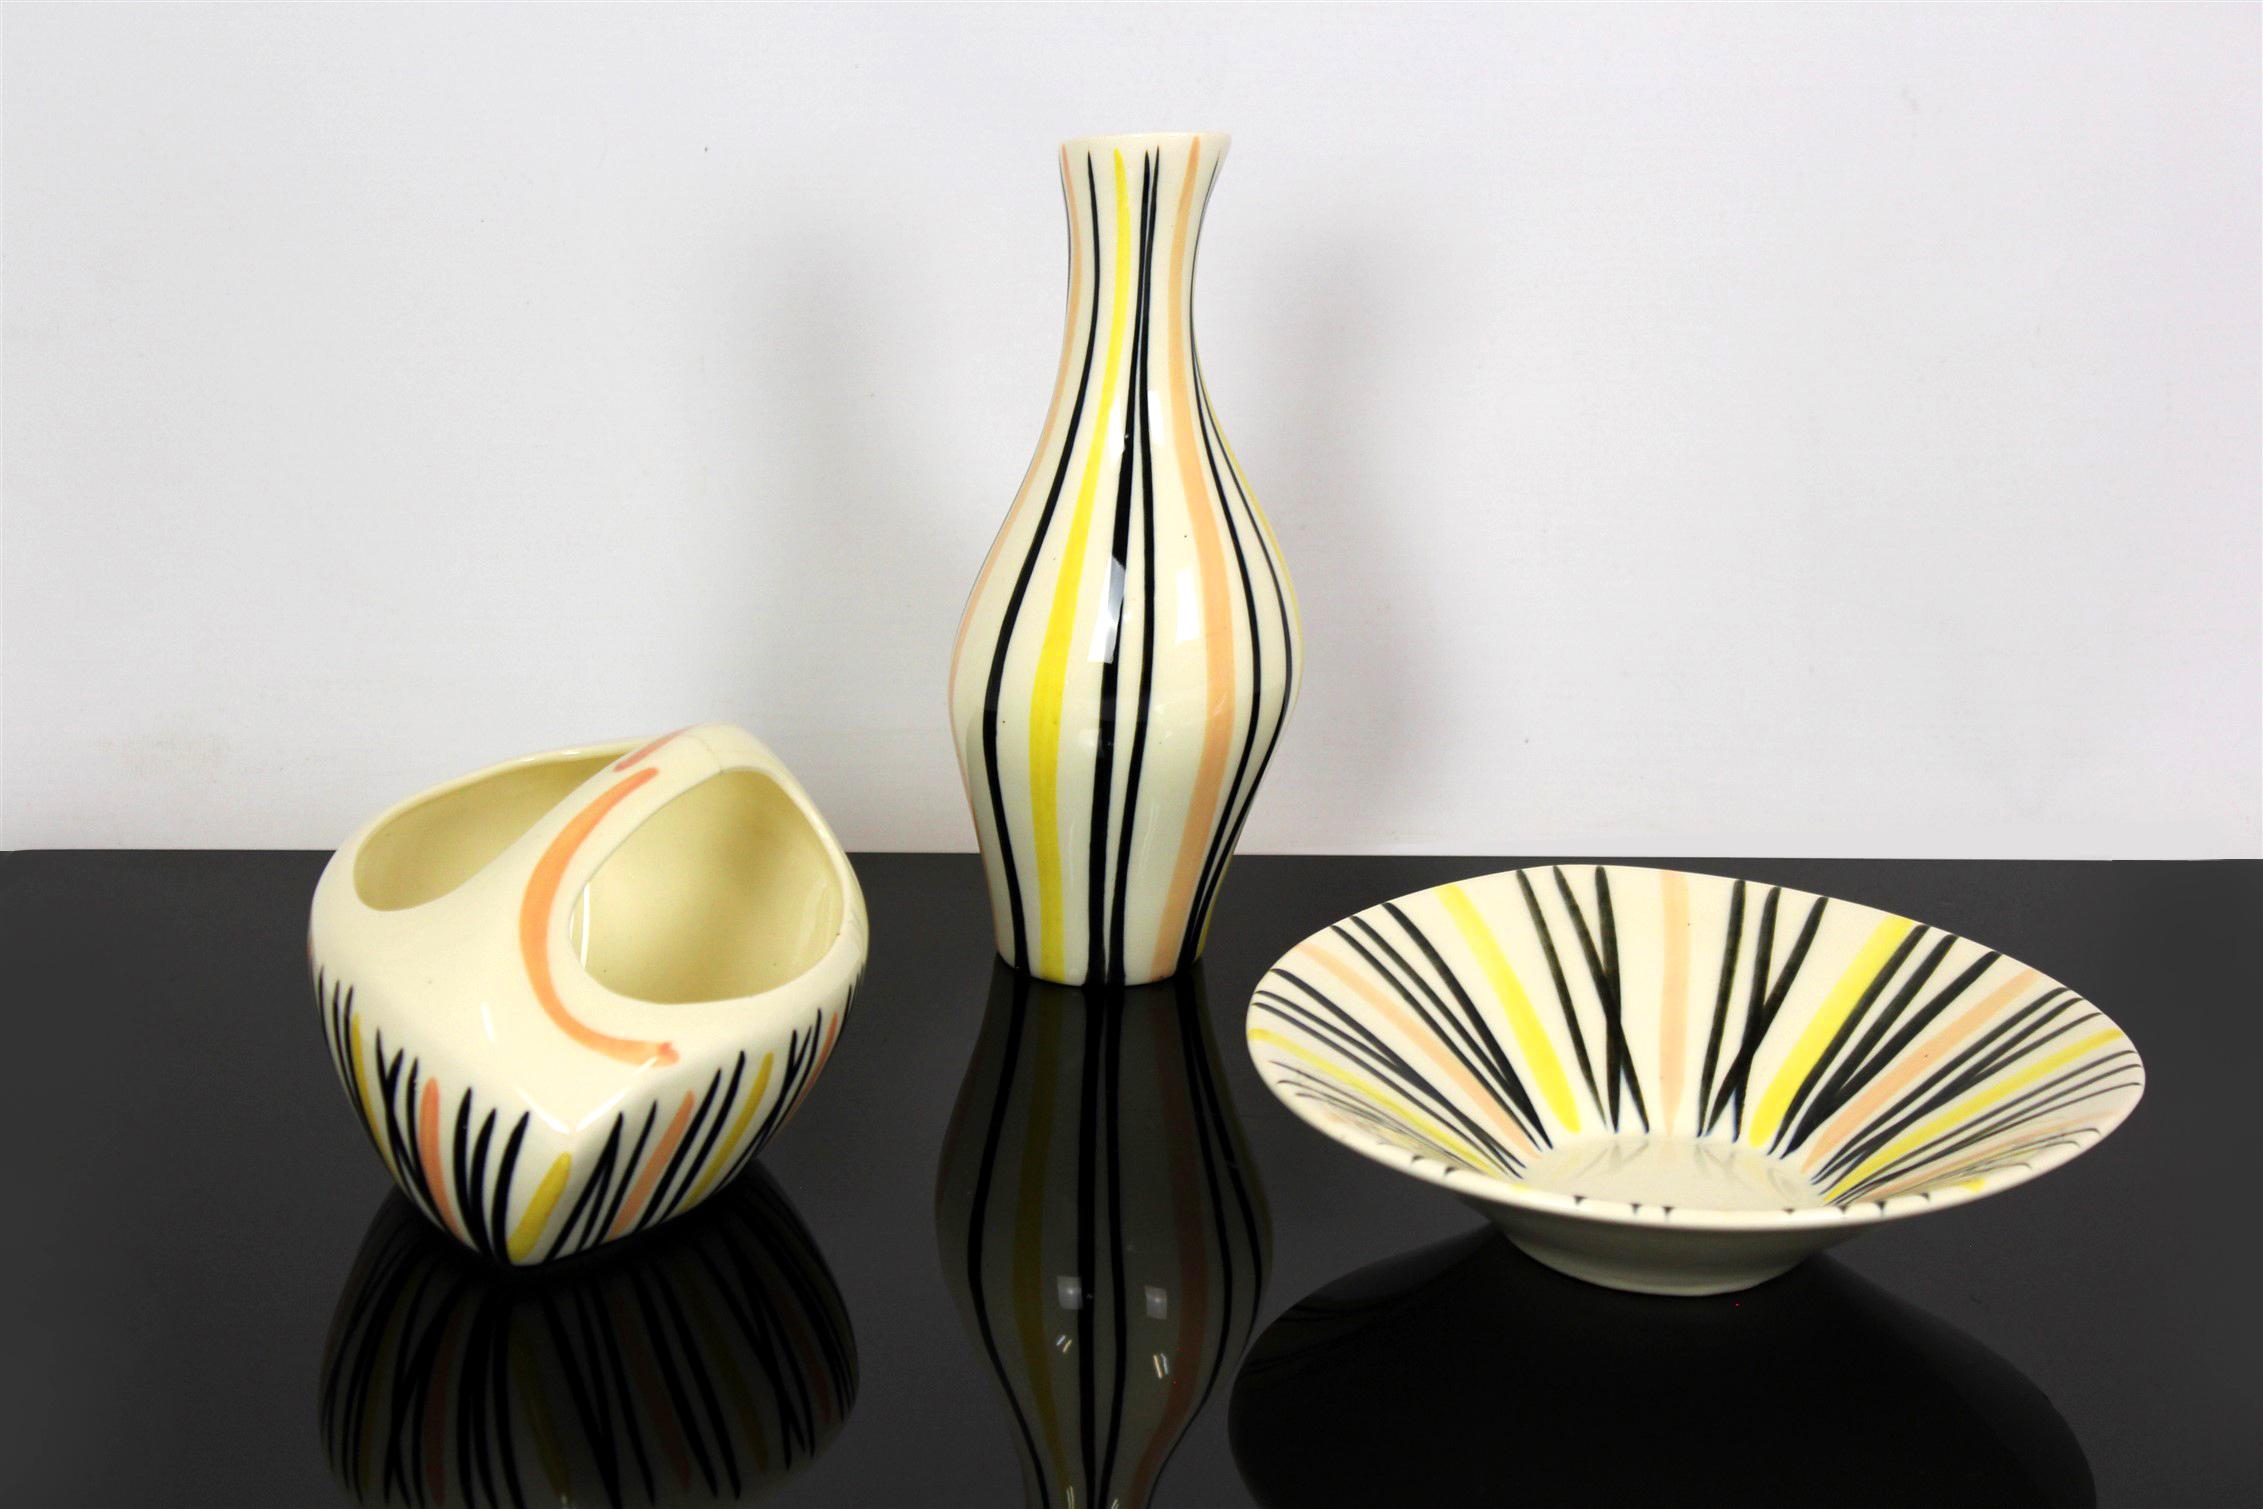 Ce service en porcelaine a été conçu en 1959 par Jarmila Formánková pour Ditmar Urbach. L'ensemble se compose d'un vase (10x10x24cm), d'un bol avec anse (20x14x10cm) et d'une assiette (21x21x6cm). Les articles de cette collection sont appelés